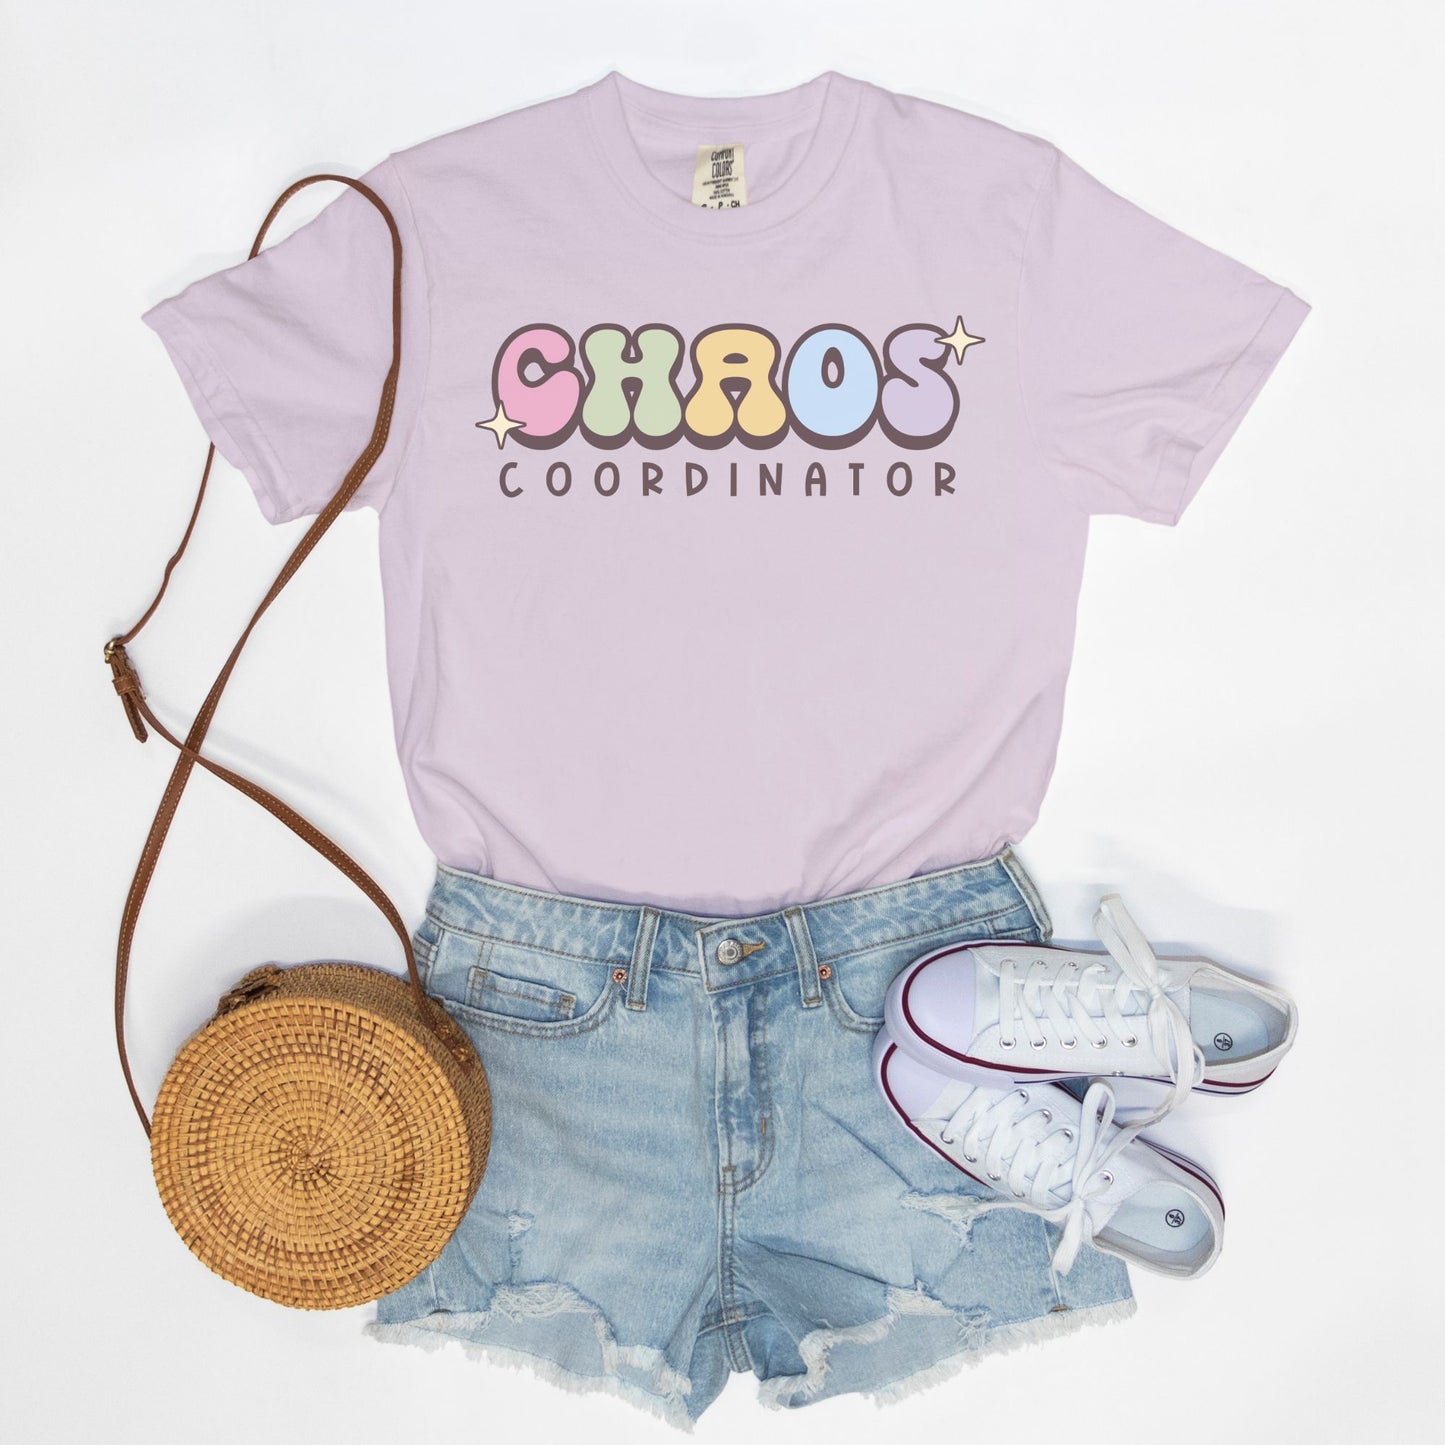 Chaos Coordinator Comfort Colors Tee